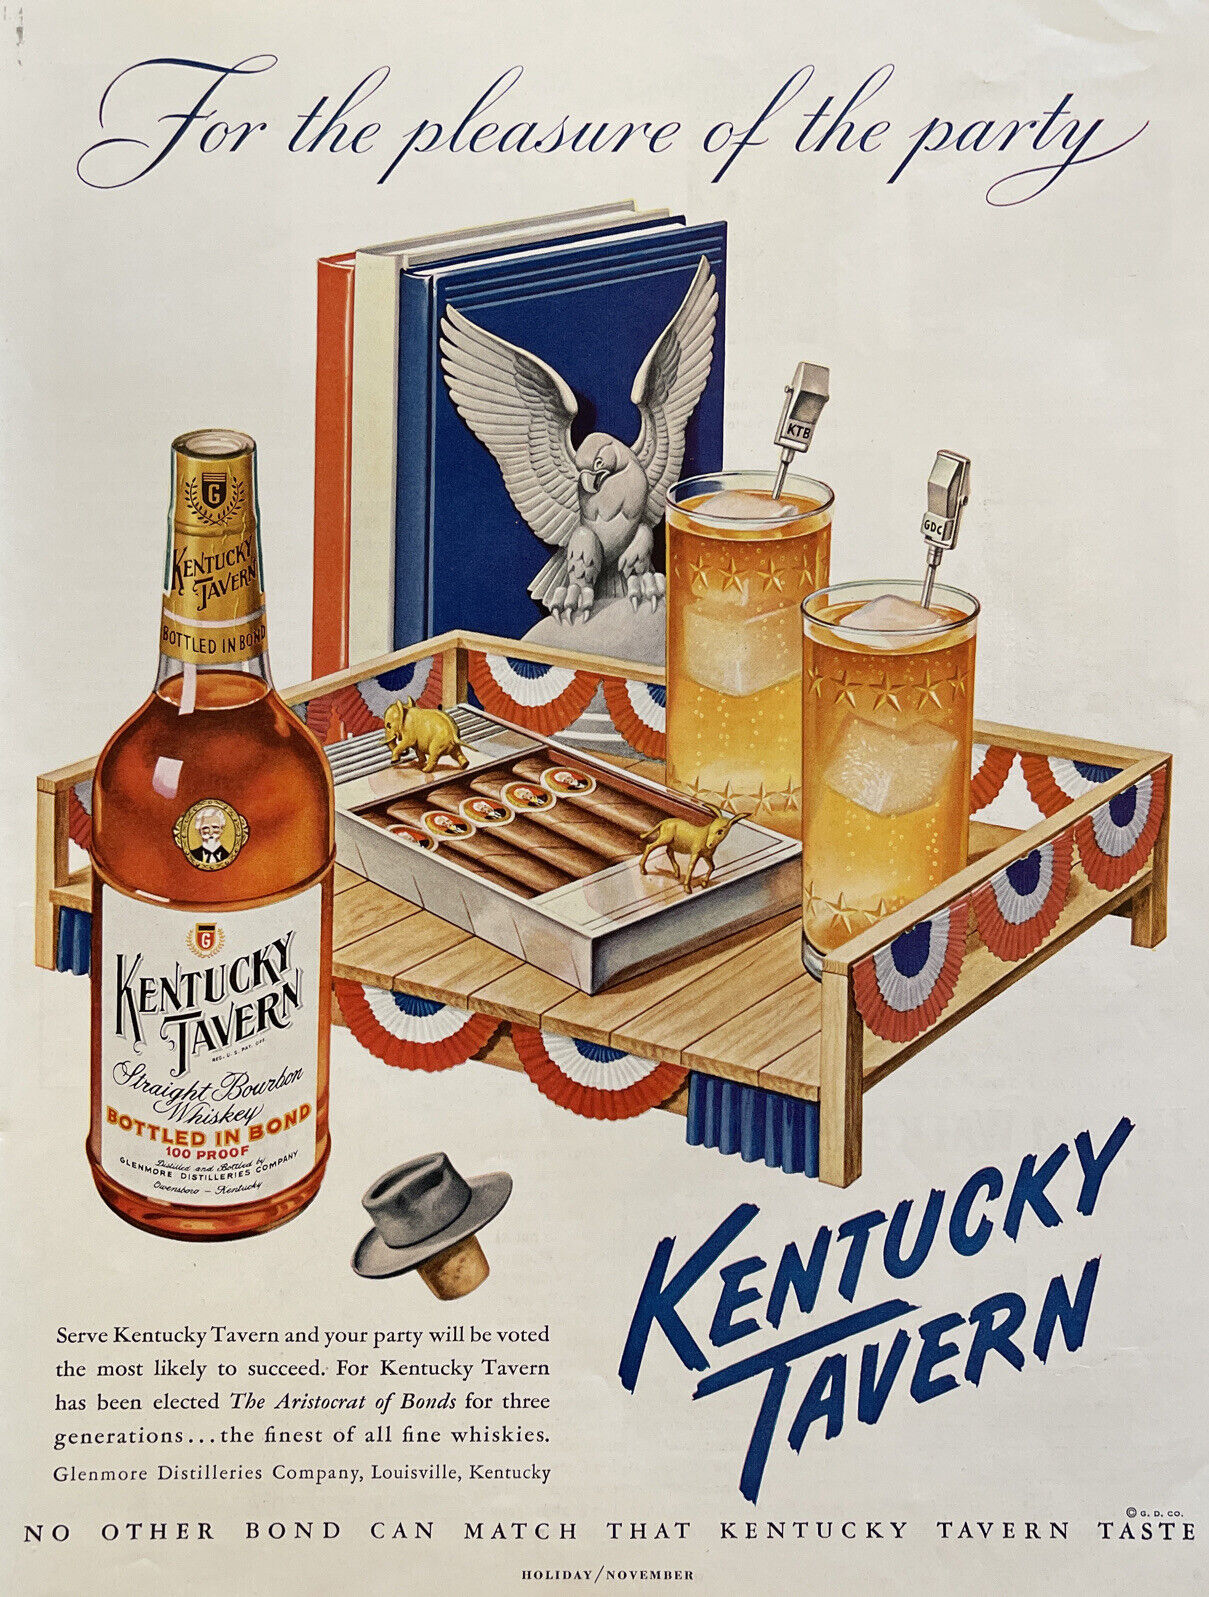 1952 Print Ad Vintage Kentucky Tavern Whiskey Political Party Vote Theme